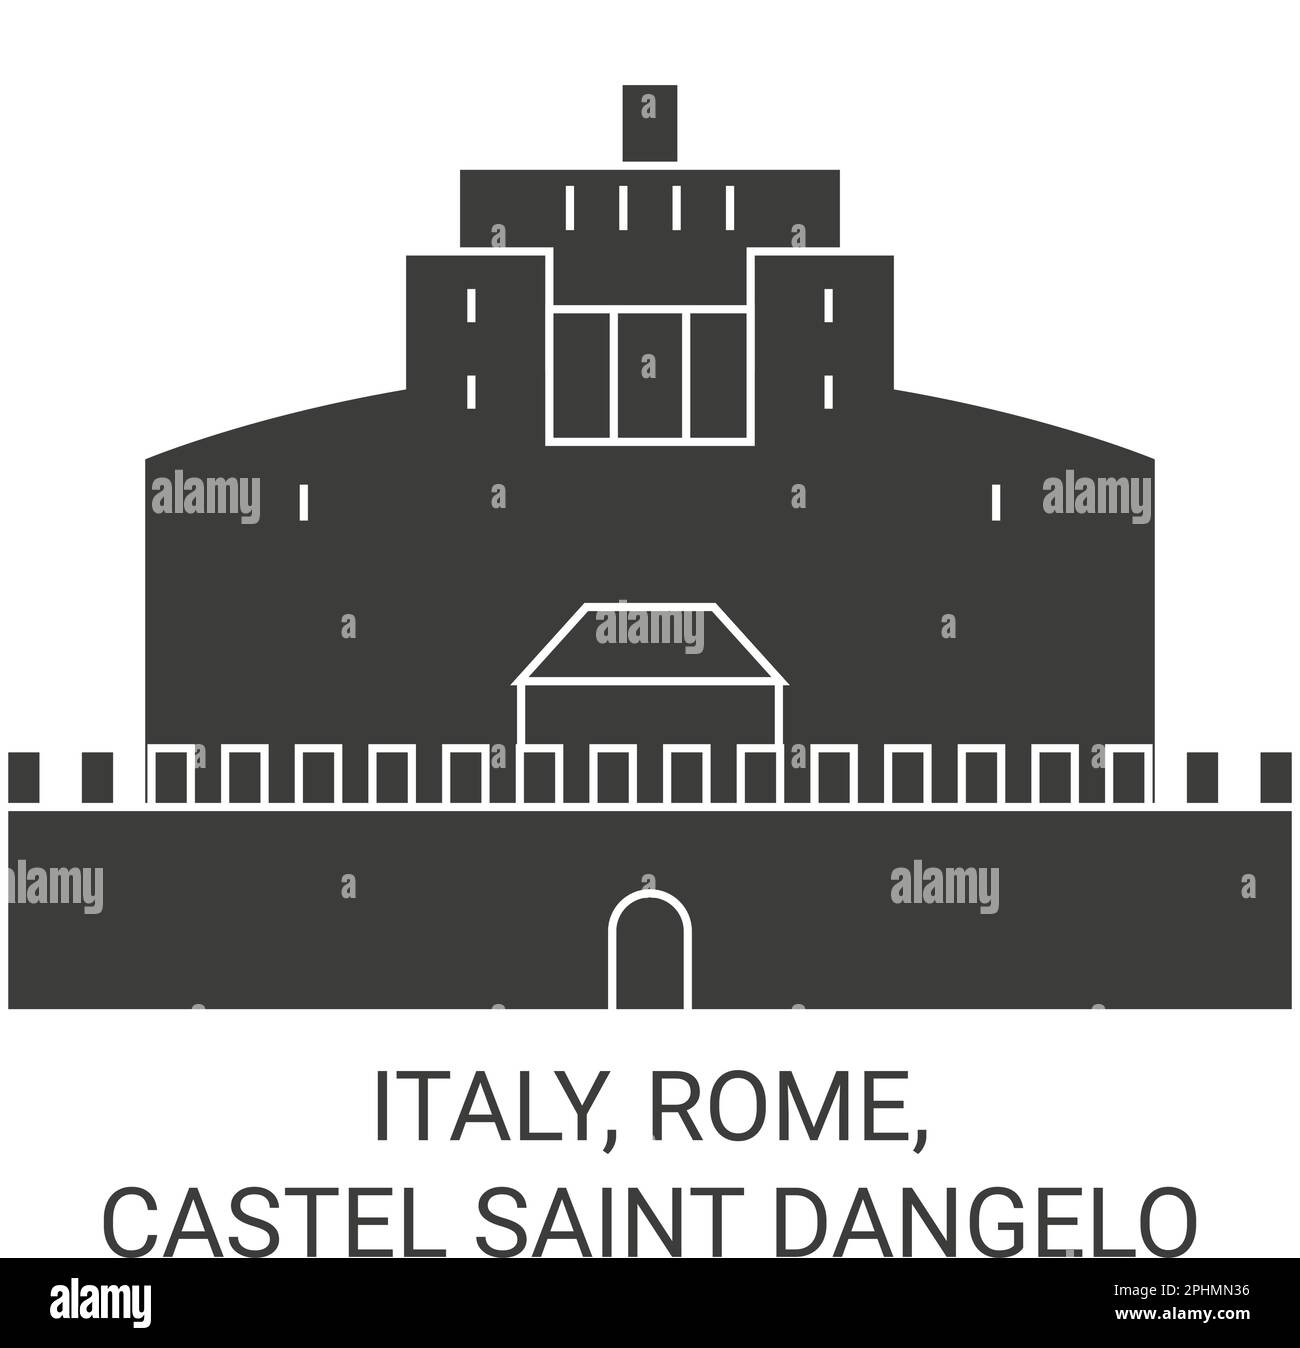 Italie, Rome, Castel Saint Dangelo voyage illustration vectorielle Illustration de Vecteur